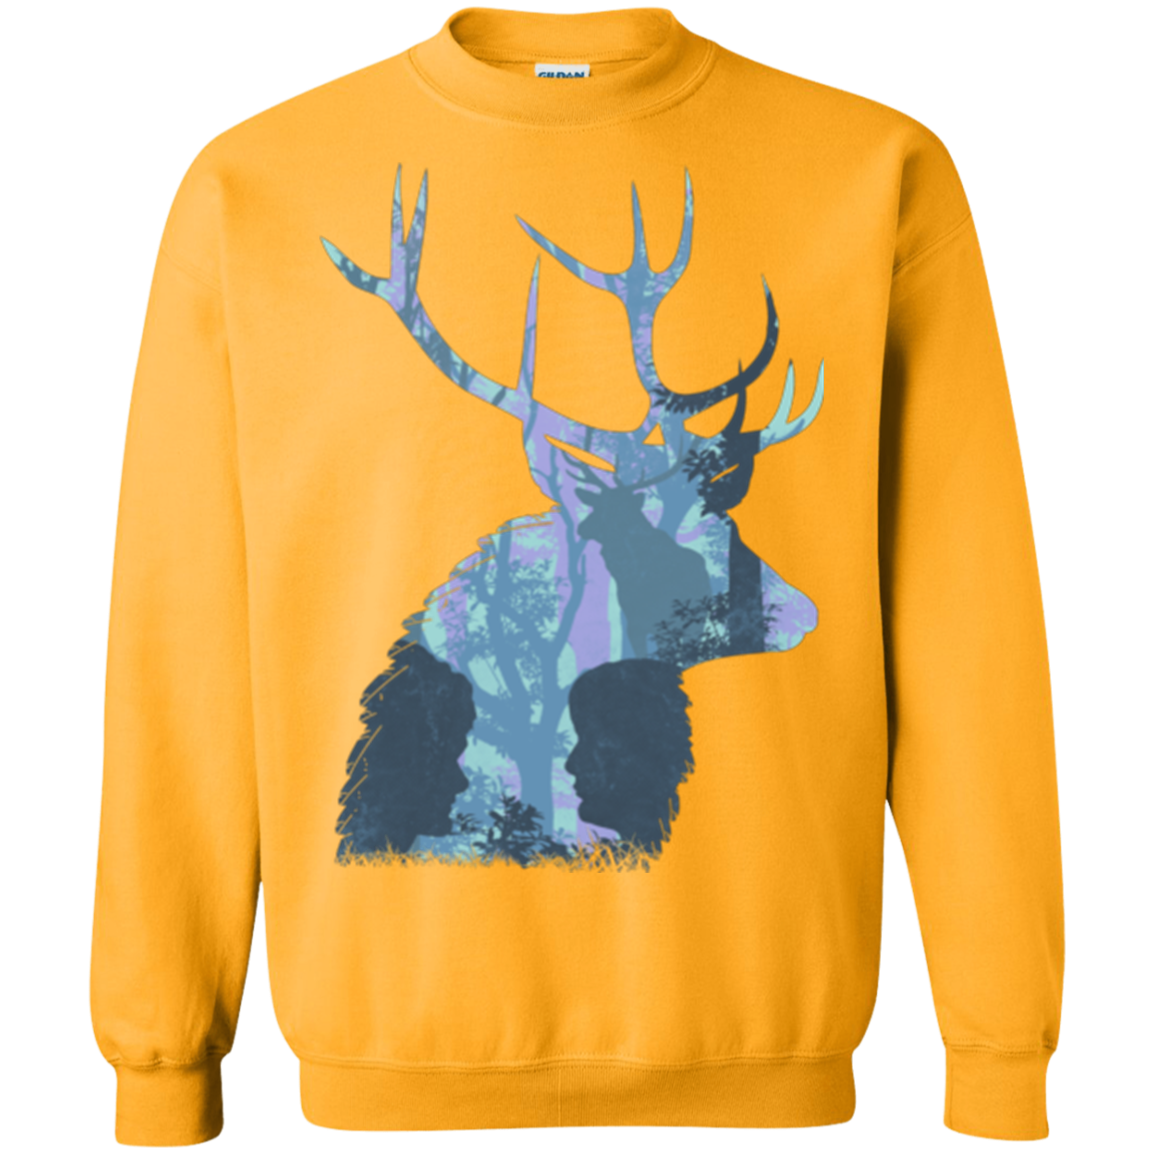 Deer Cannibal Crewneck Sweatshirt